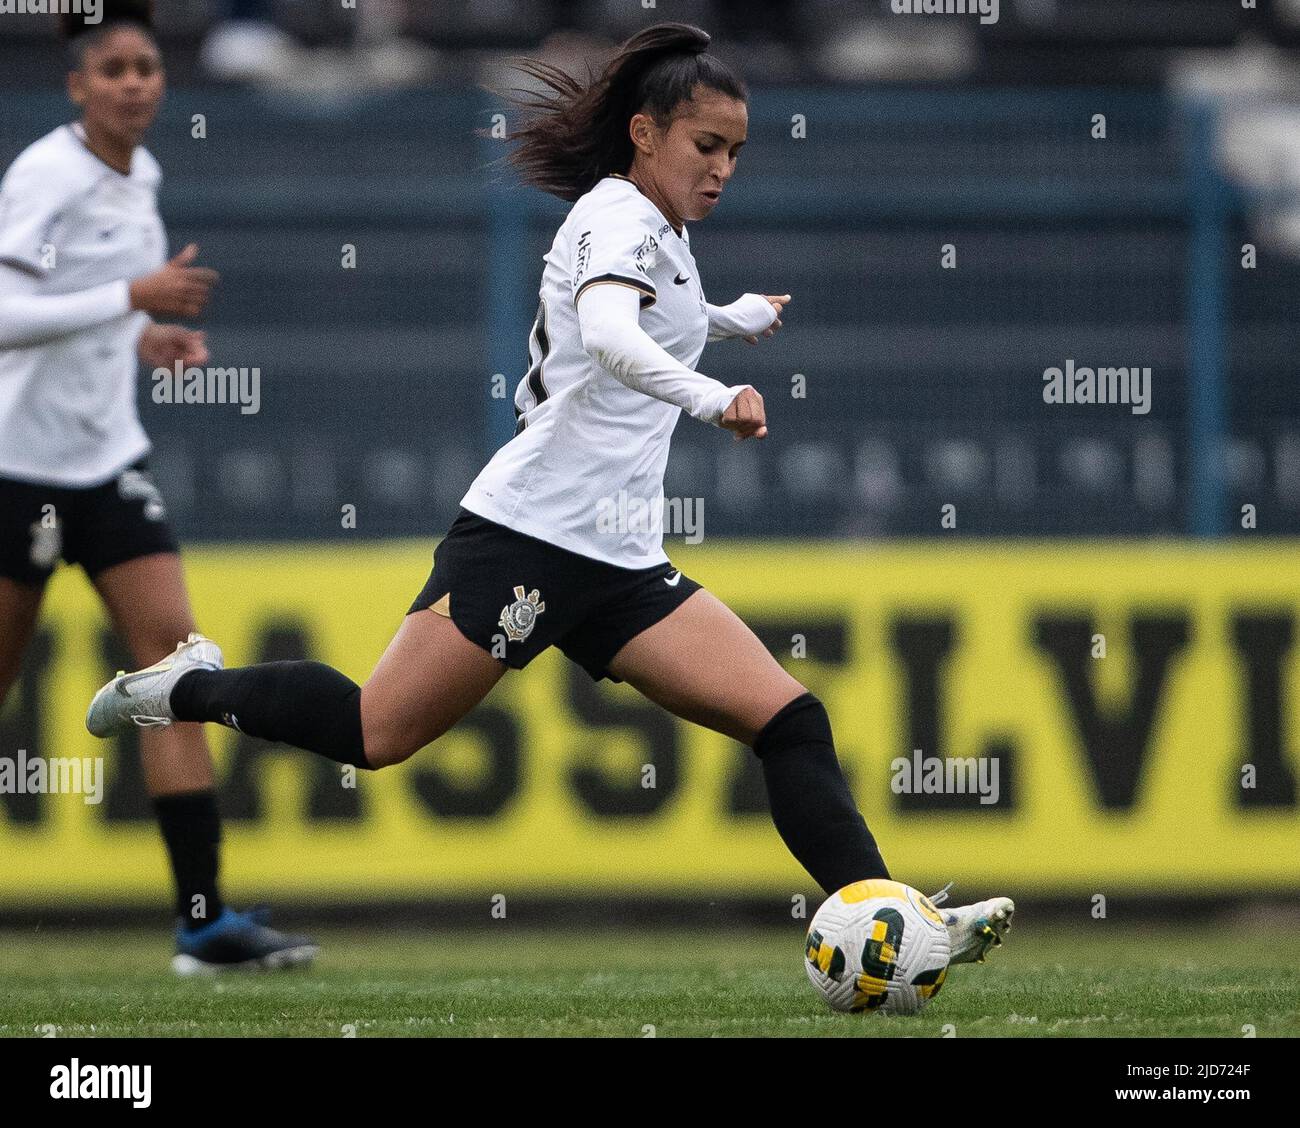 Futebol Feminino - A Juventus da Brasileira @mariazinha_official , foi  BiCampeã da Supercopa da Itália. 𝟐𝟎𝟏𝟗/𝟐𝟎 🏆 𝟐𝟎𝟐𝟎/𝟐𝟏 🏆 Foto ig:  @mariazinha_official